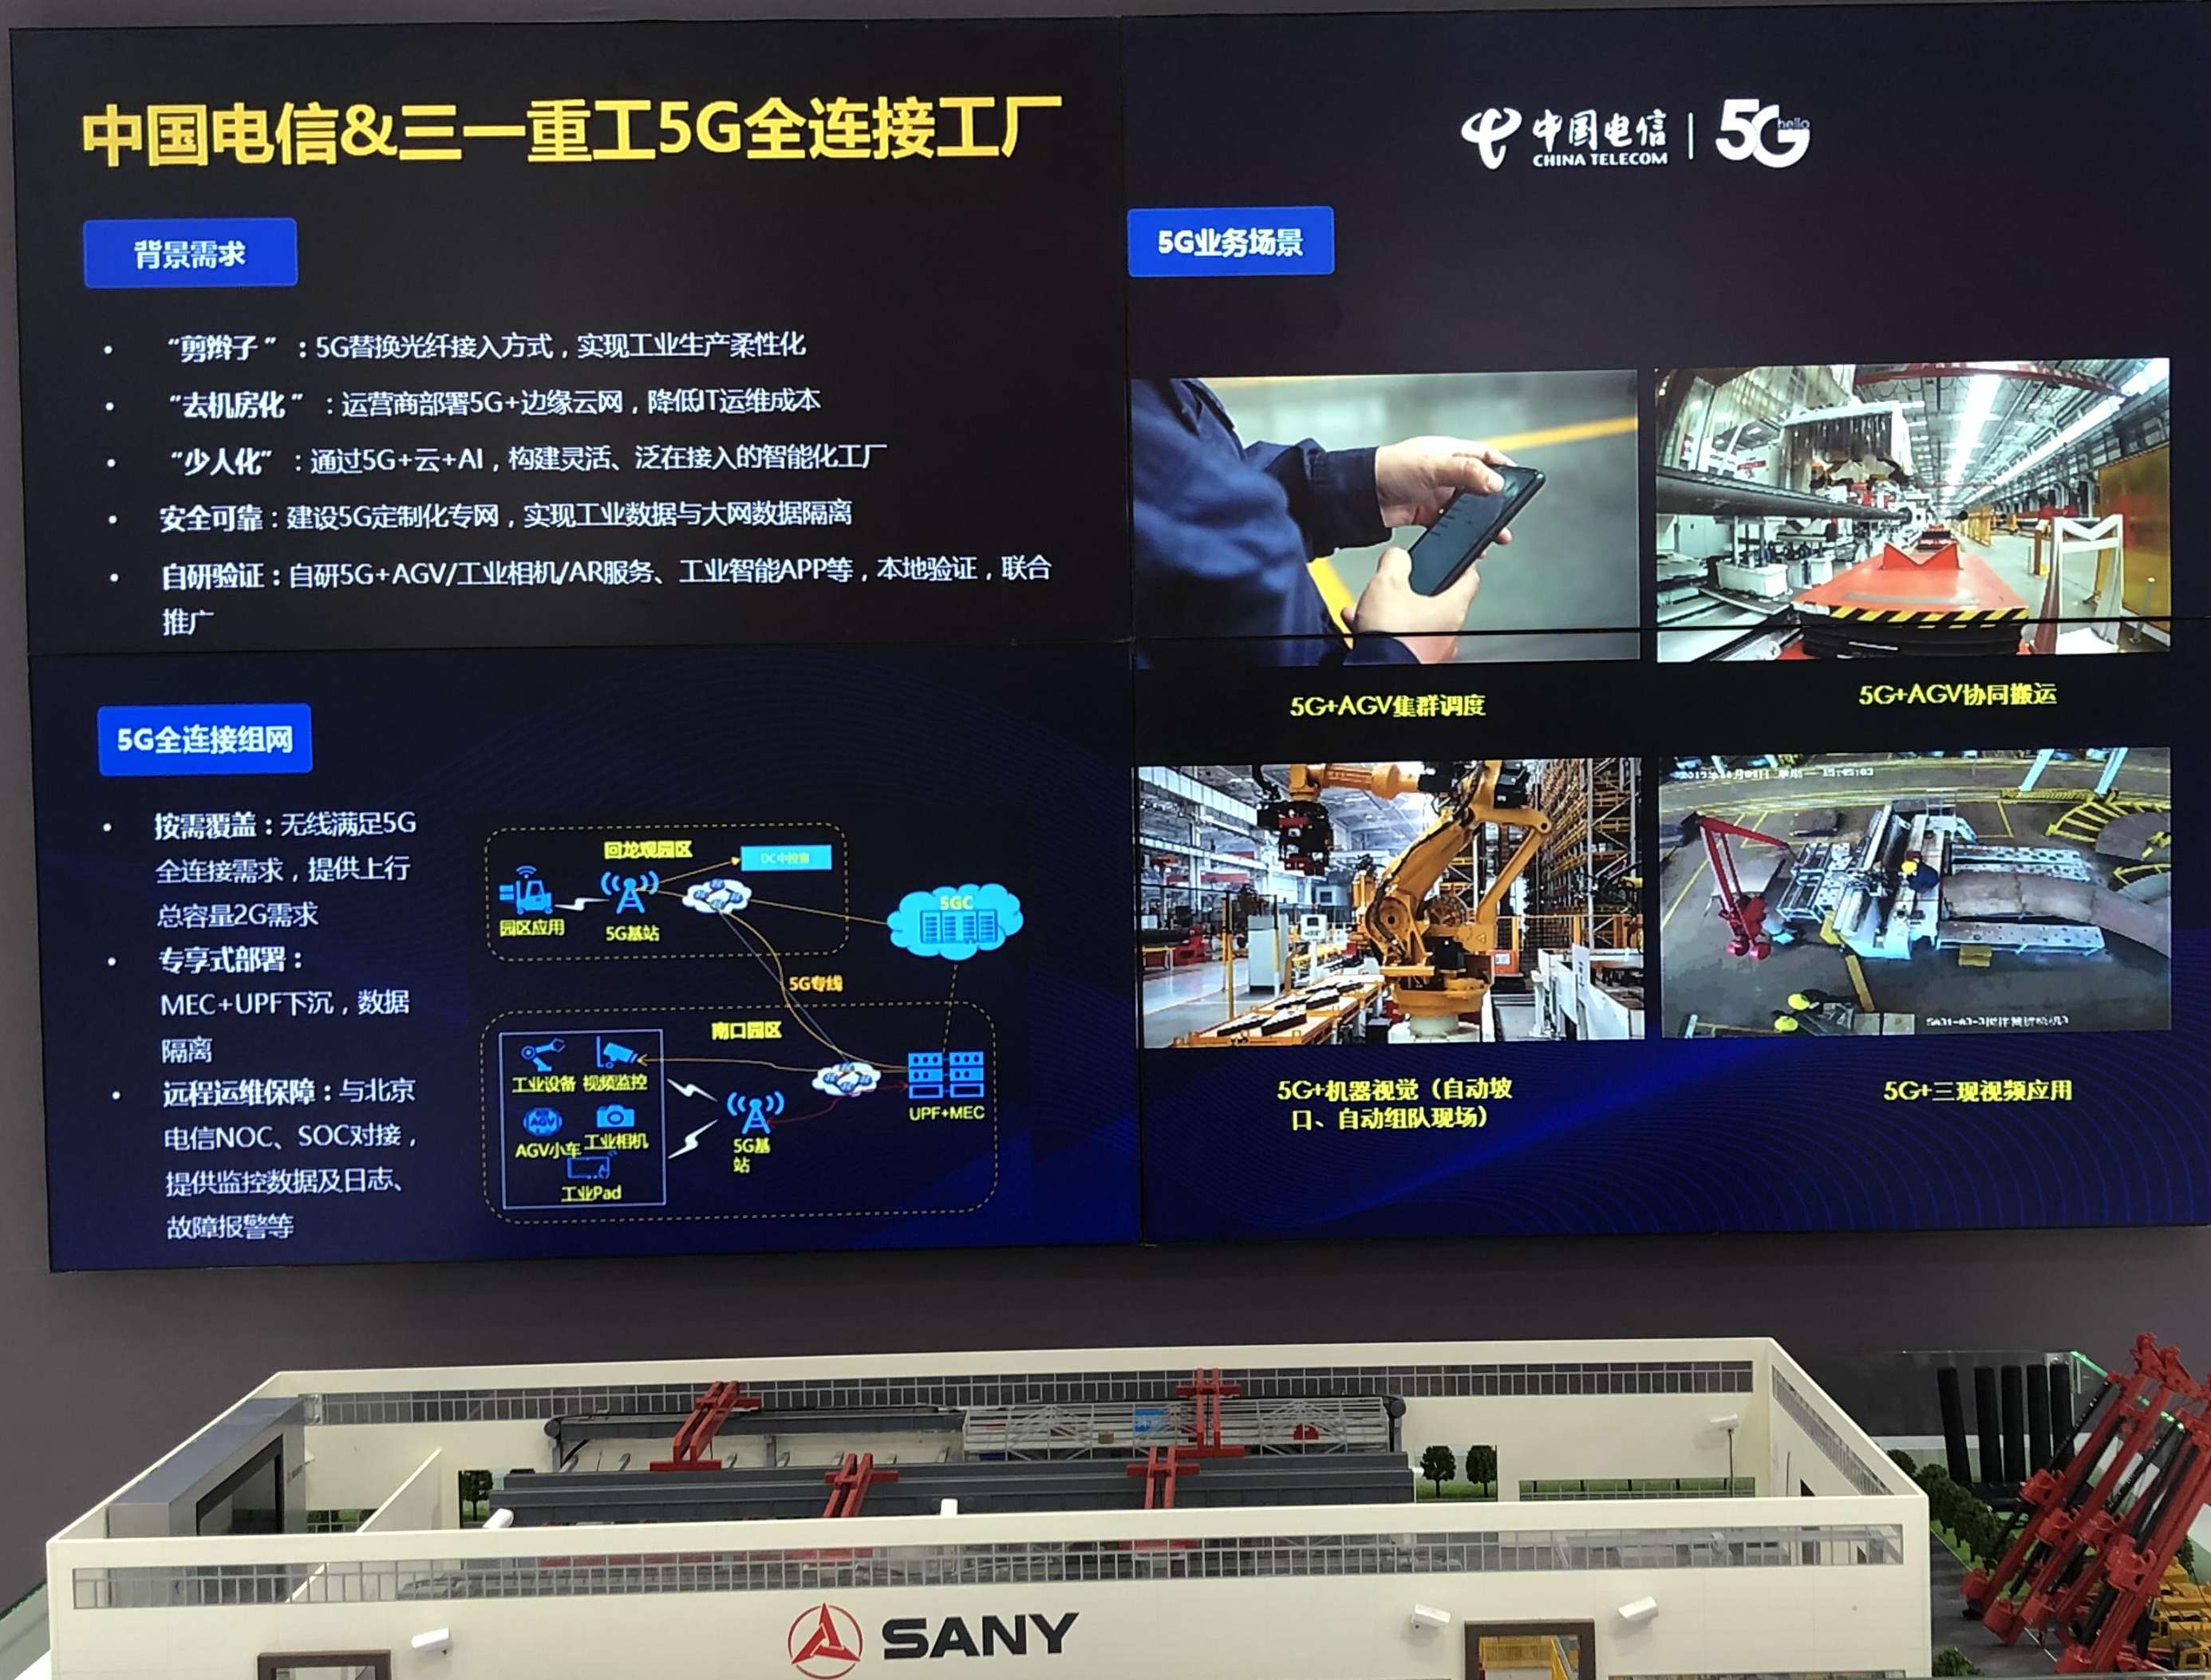 電信、計算機、信息服務展館中國電信展示的5G全連接工廠。人民網記者石麗峰 攝